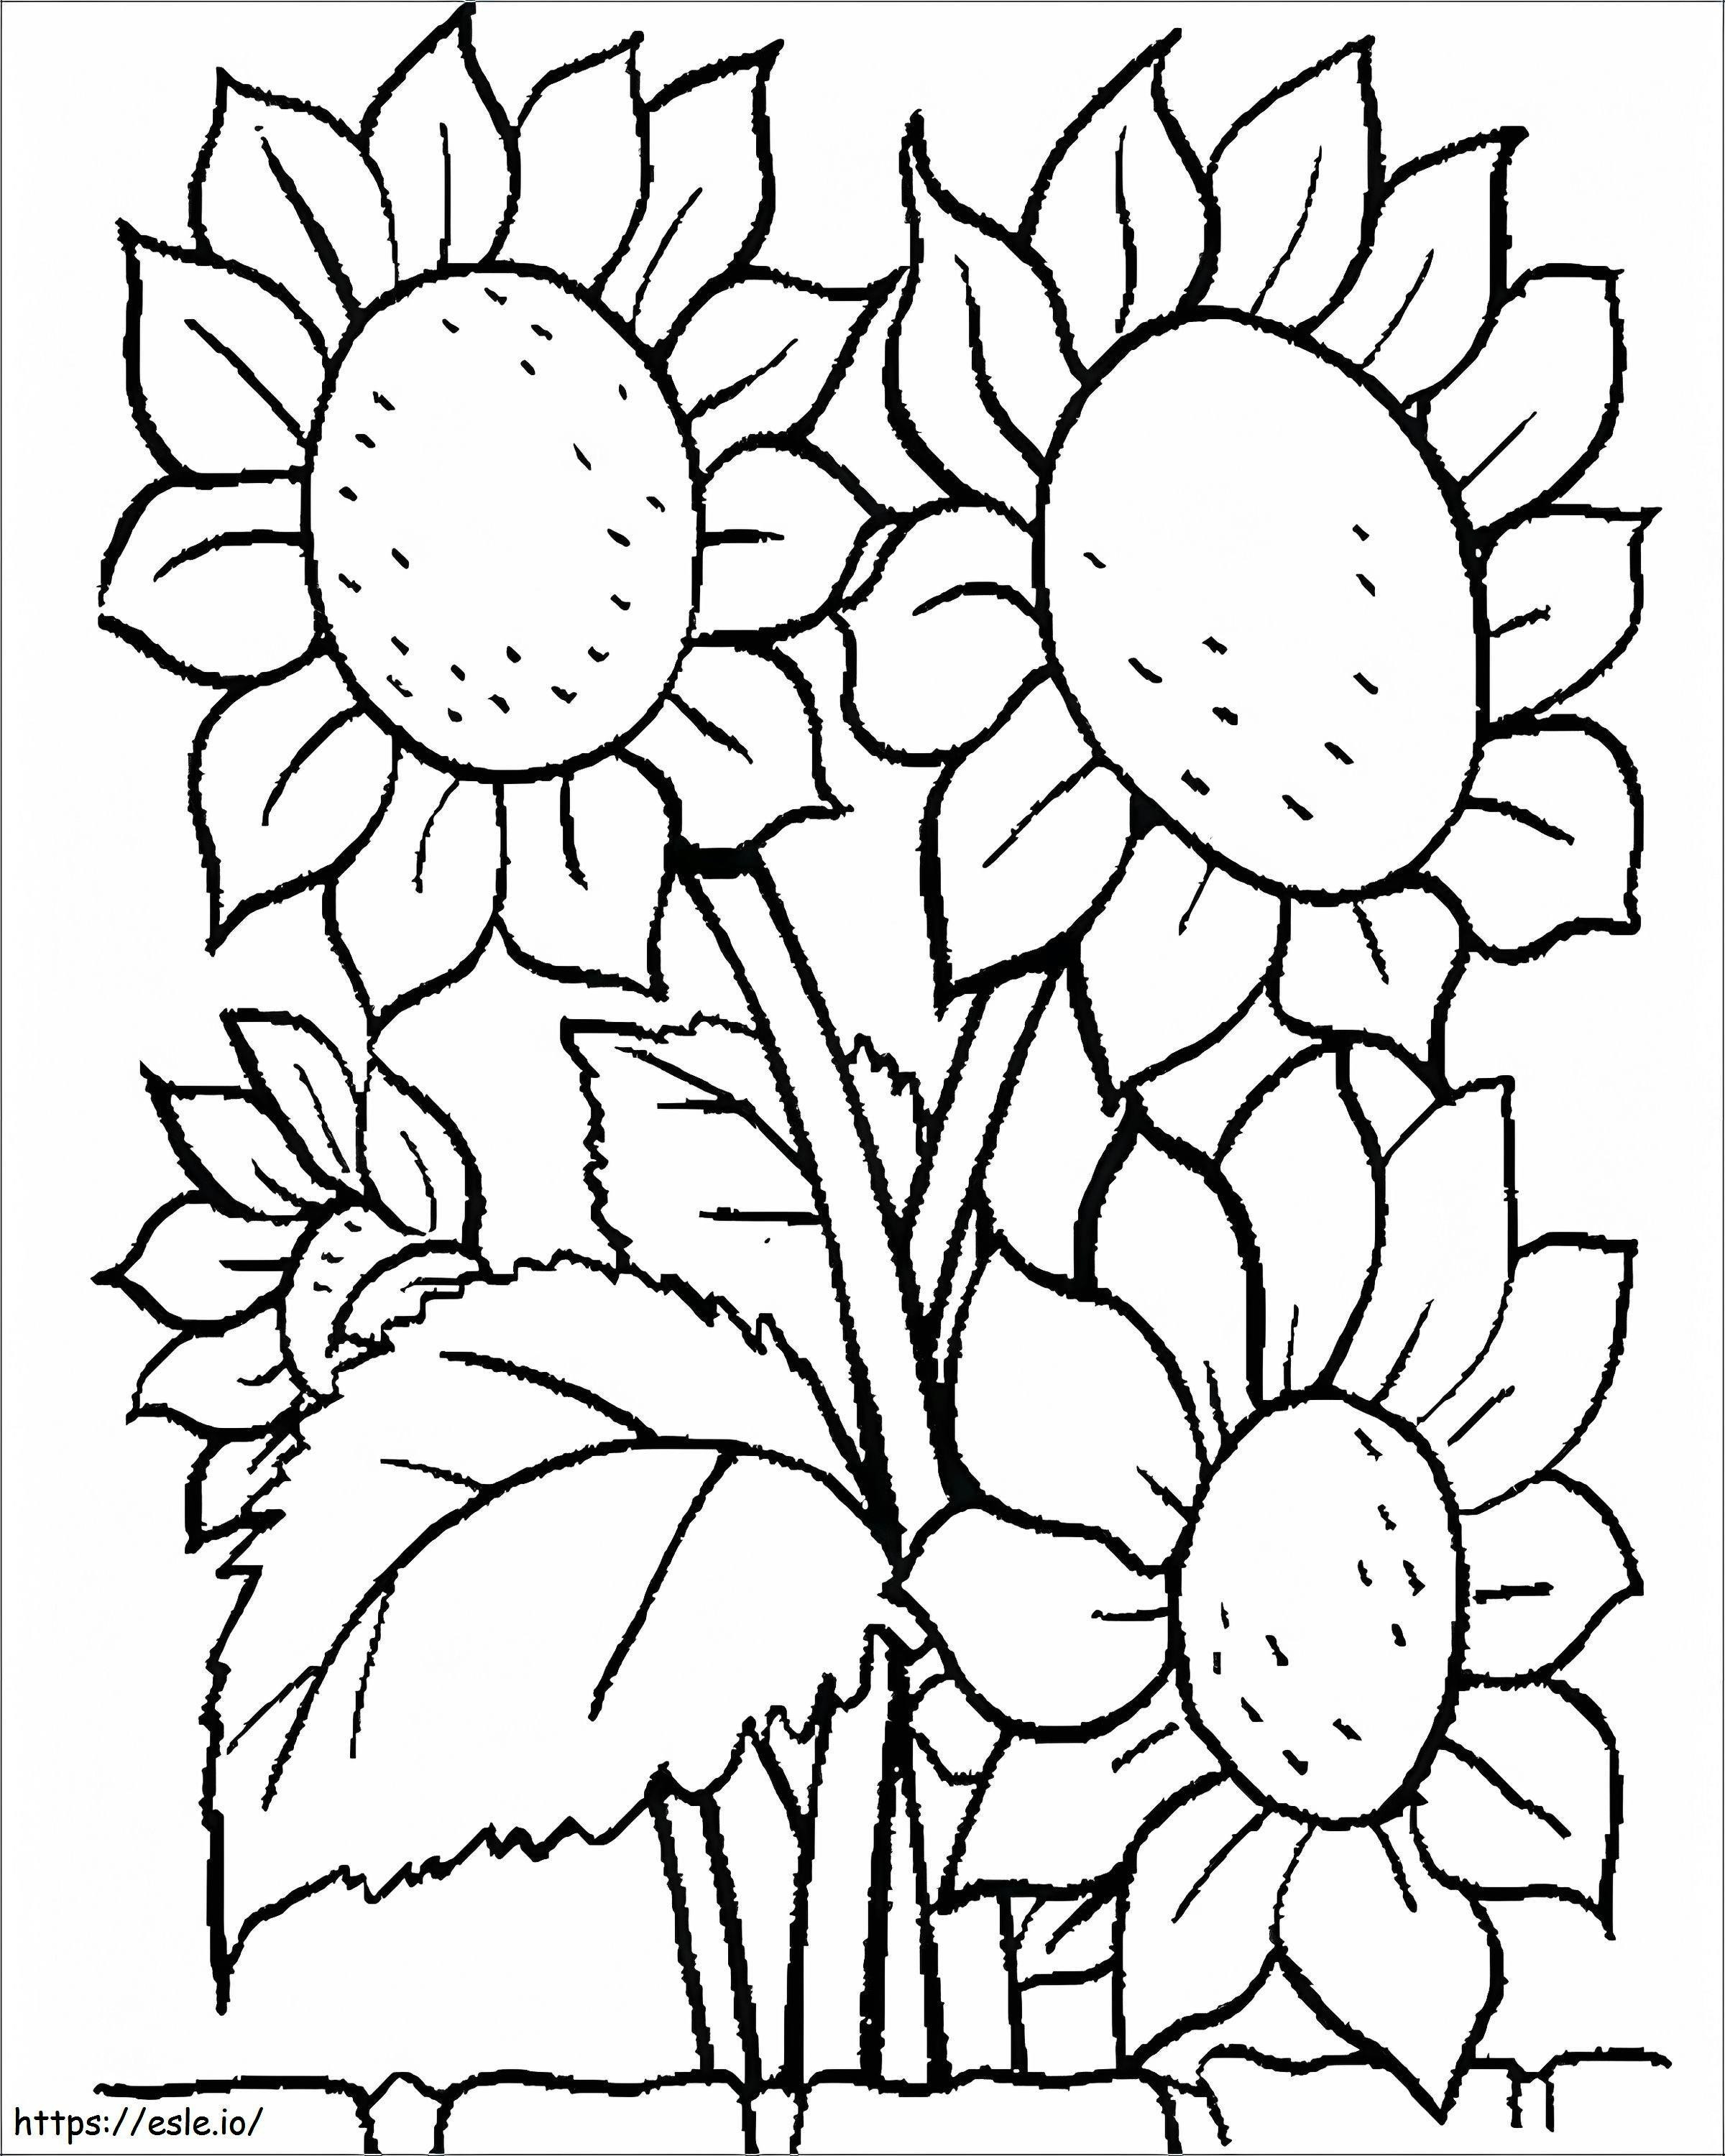 Coloriage 1539919156 Feuilles De Coloriage De Fleurs Pour Les Enfants D'âge Préscolaire Faciles À Imprimer Fleur Gratuit Coloriage De Fleurs Images Fleurs Imprimables Coloriage De Fleurs Feuilles De Coloriage De Fleurs Imprimables Pour Prescho à imprimer dessin